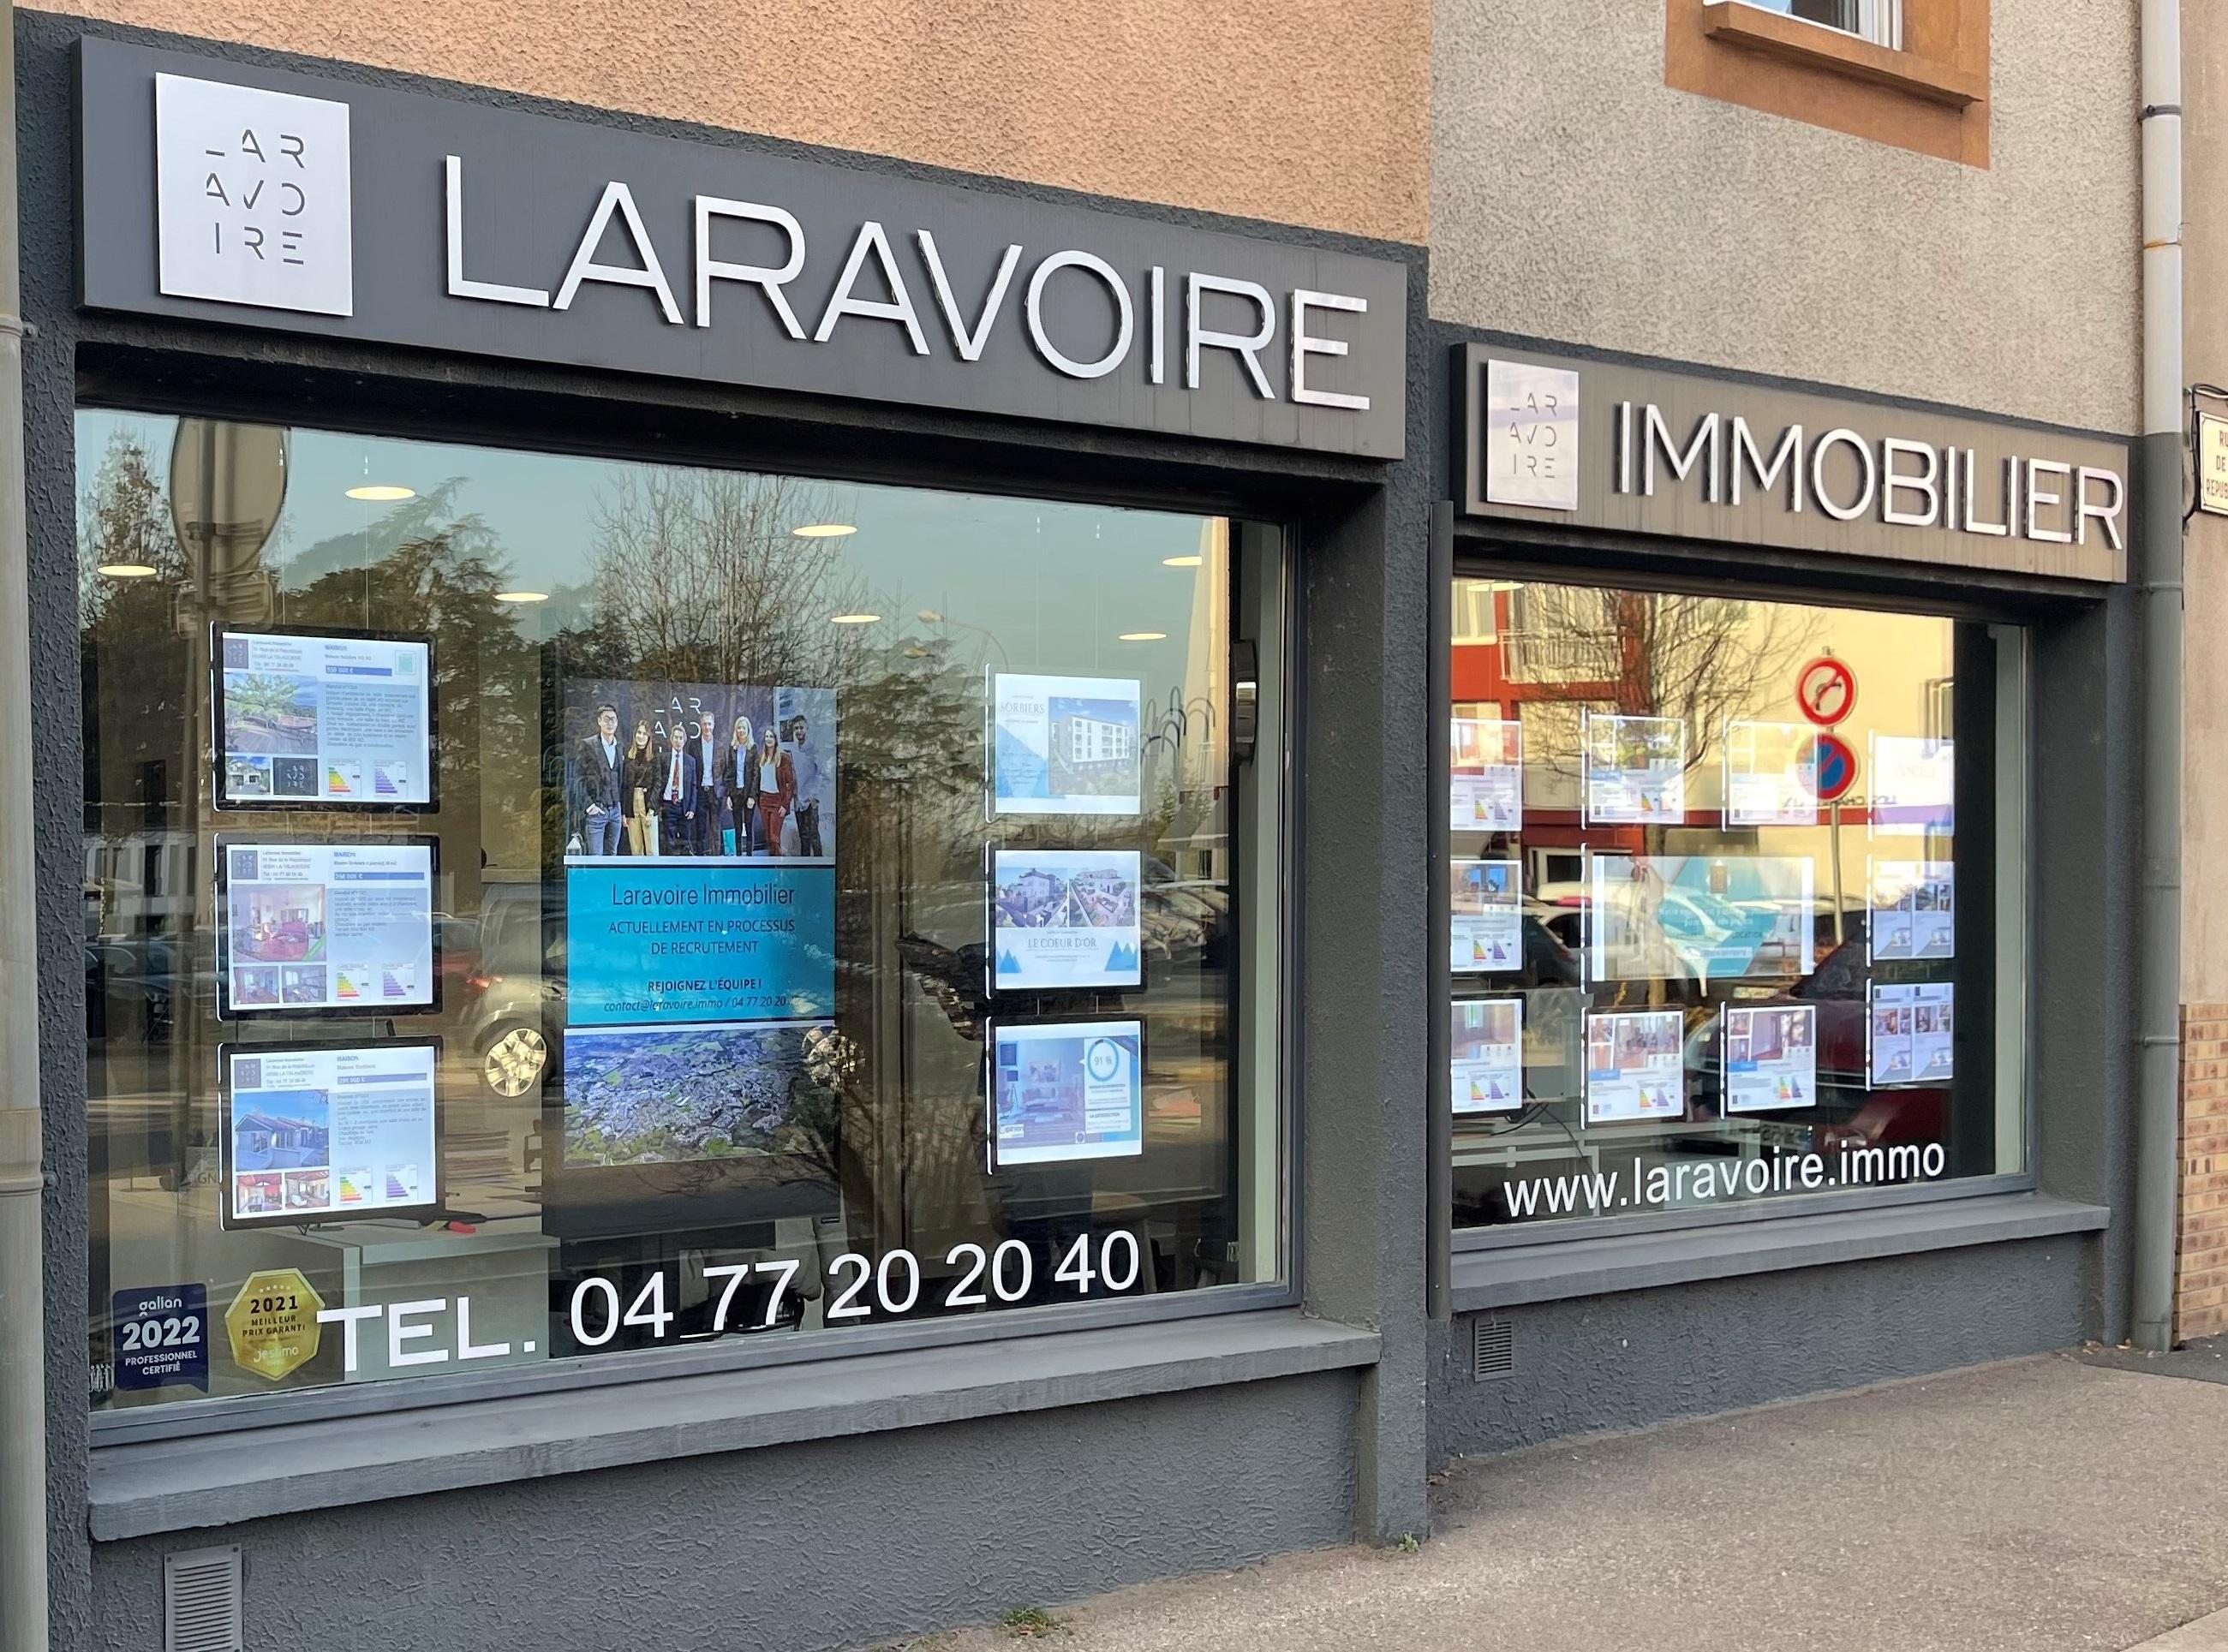 Laravoire Immobilier La Talaudière